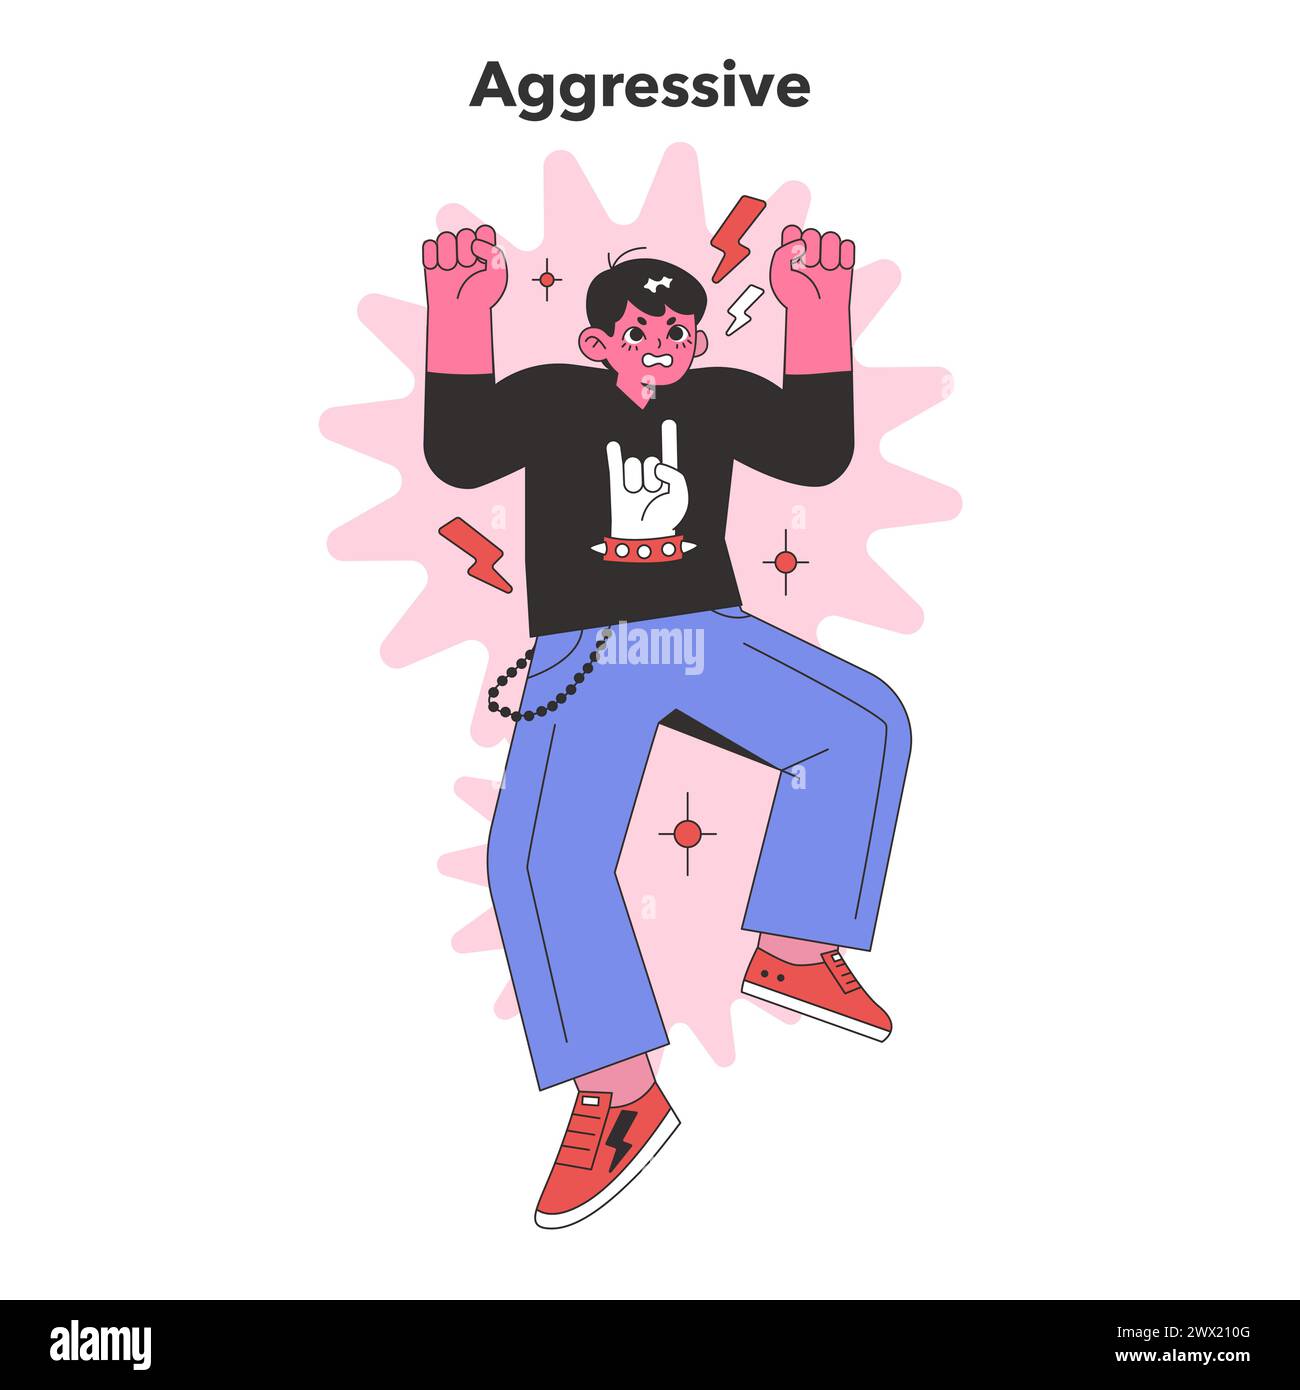 Aggressive Persönlichkeitsdarstellung. Eine animierte Figur in dynamischer Pose, die konfrontatives und feindseliges Verhalten repräsentiert. Illustration des flachen Vektors Stock Vektor